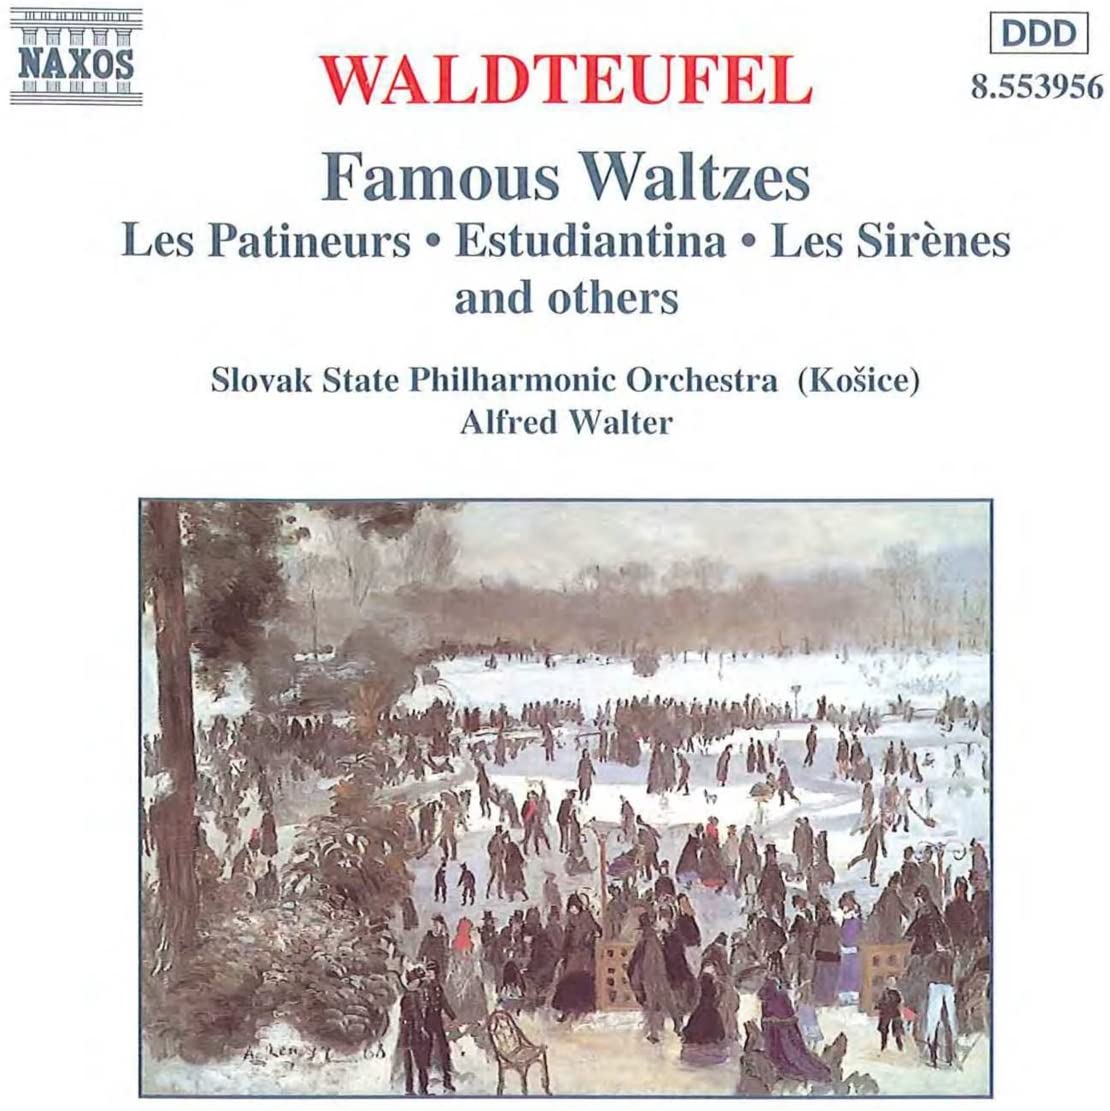 WALDTEUFEL: Famous Waltzes